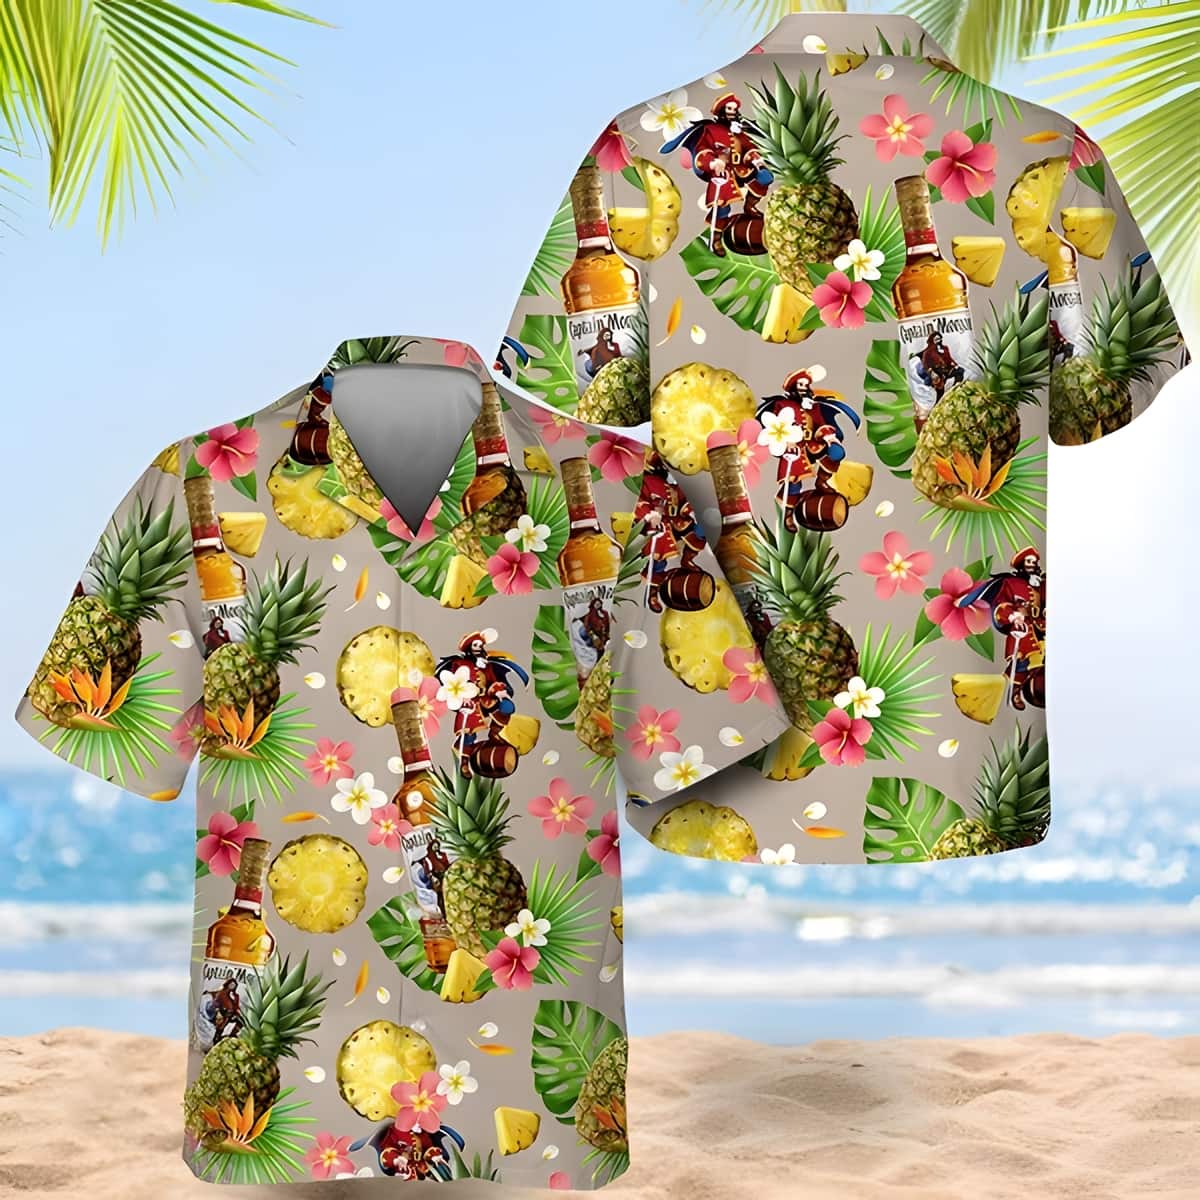 Captain Morgan Hawaiian Shirt Pineapple Pattern Summer Holiday Gift